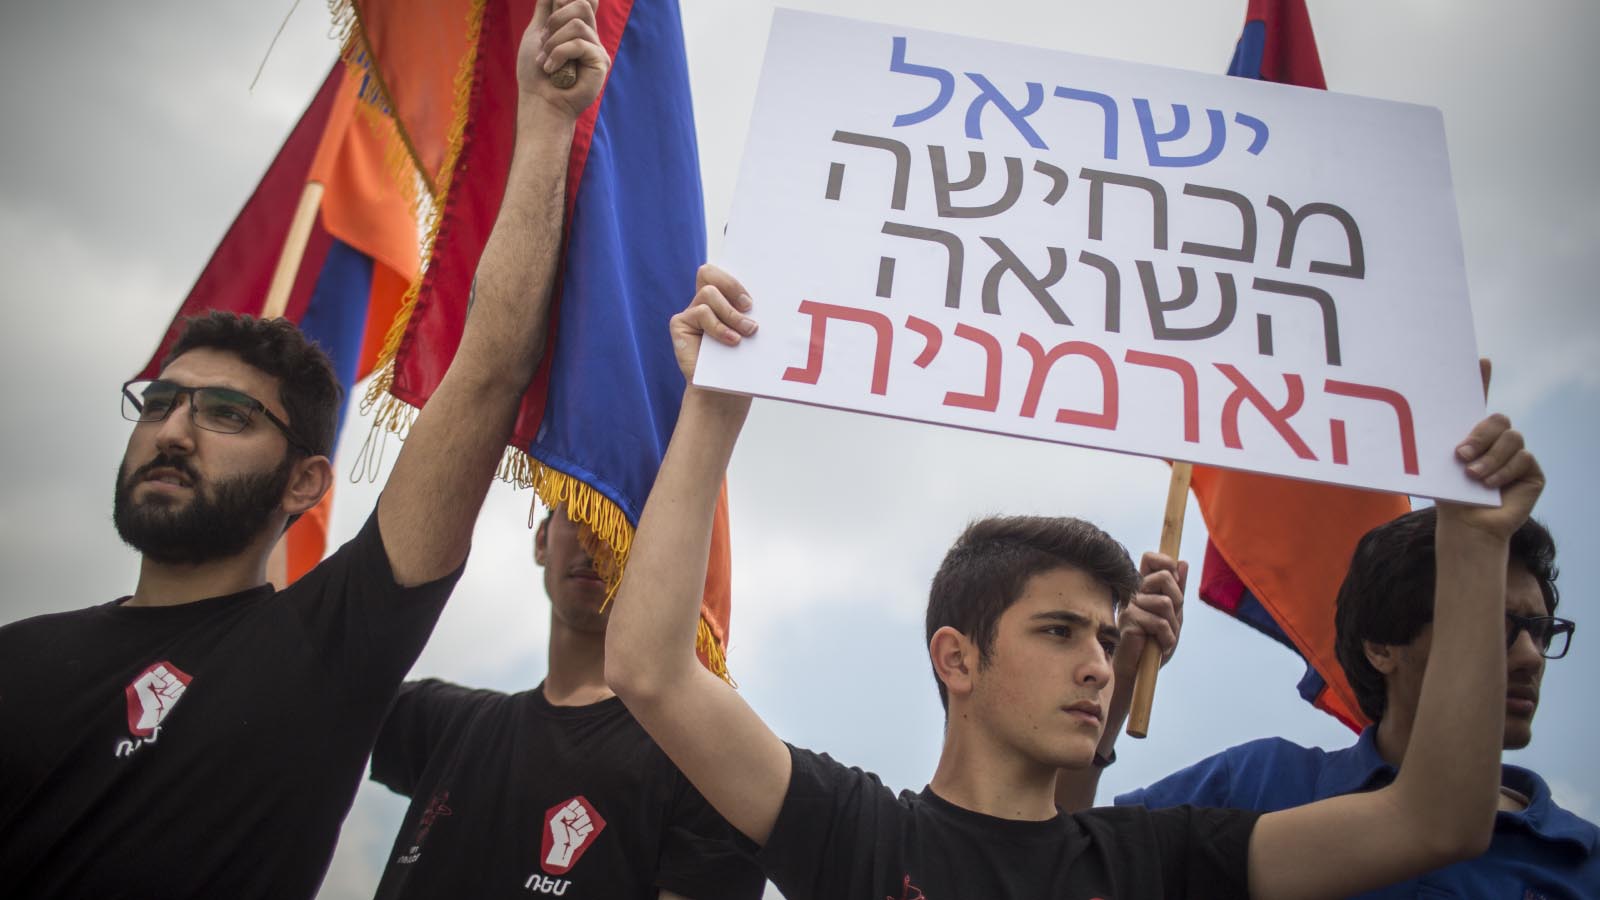 הפגנת של חברי הקהילה הארמנית בירושלים מחוץ למשרד החוץ, בדרישה שישראל תכיר ברצח העם הארמני. אפריל 2016 (צילום: הדס פרוש/ פלאש90)